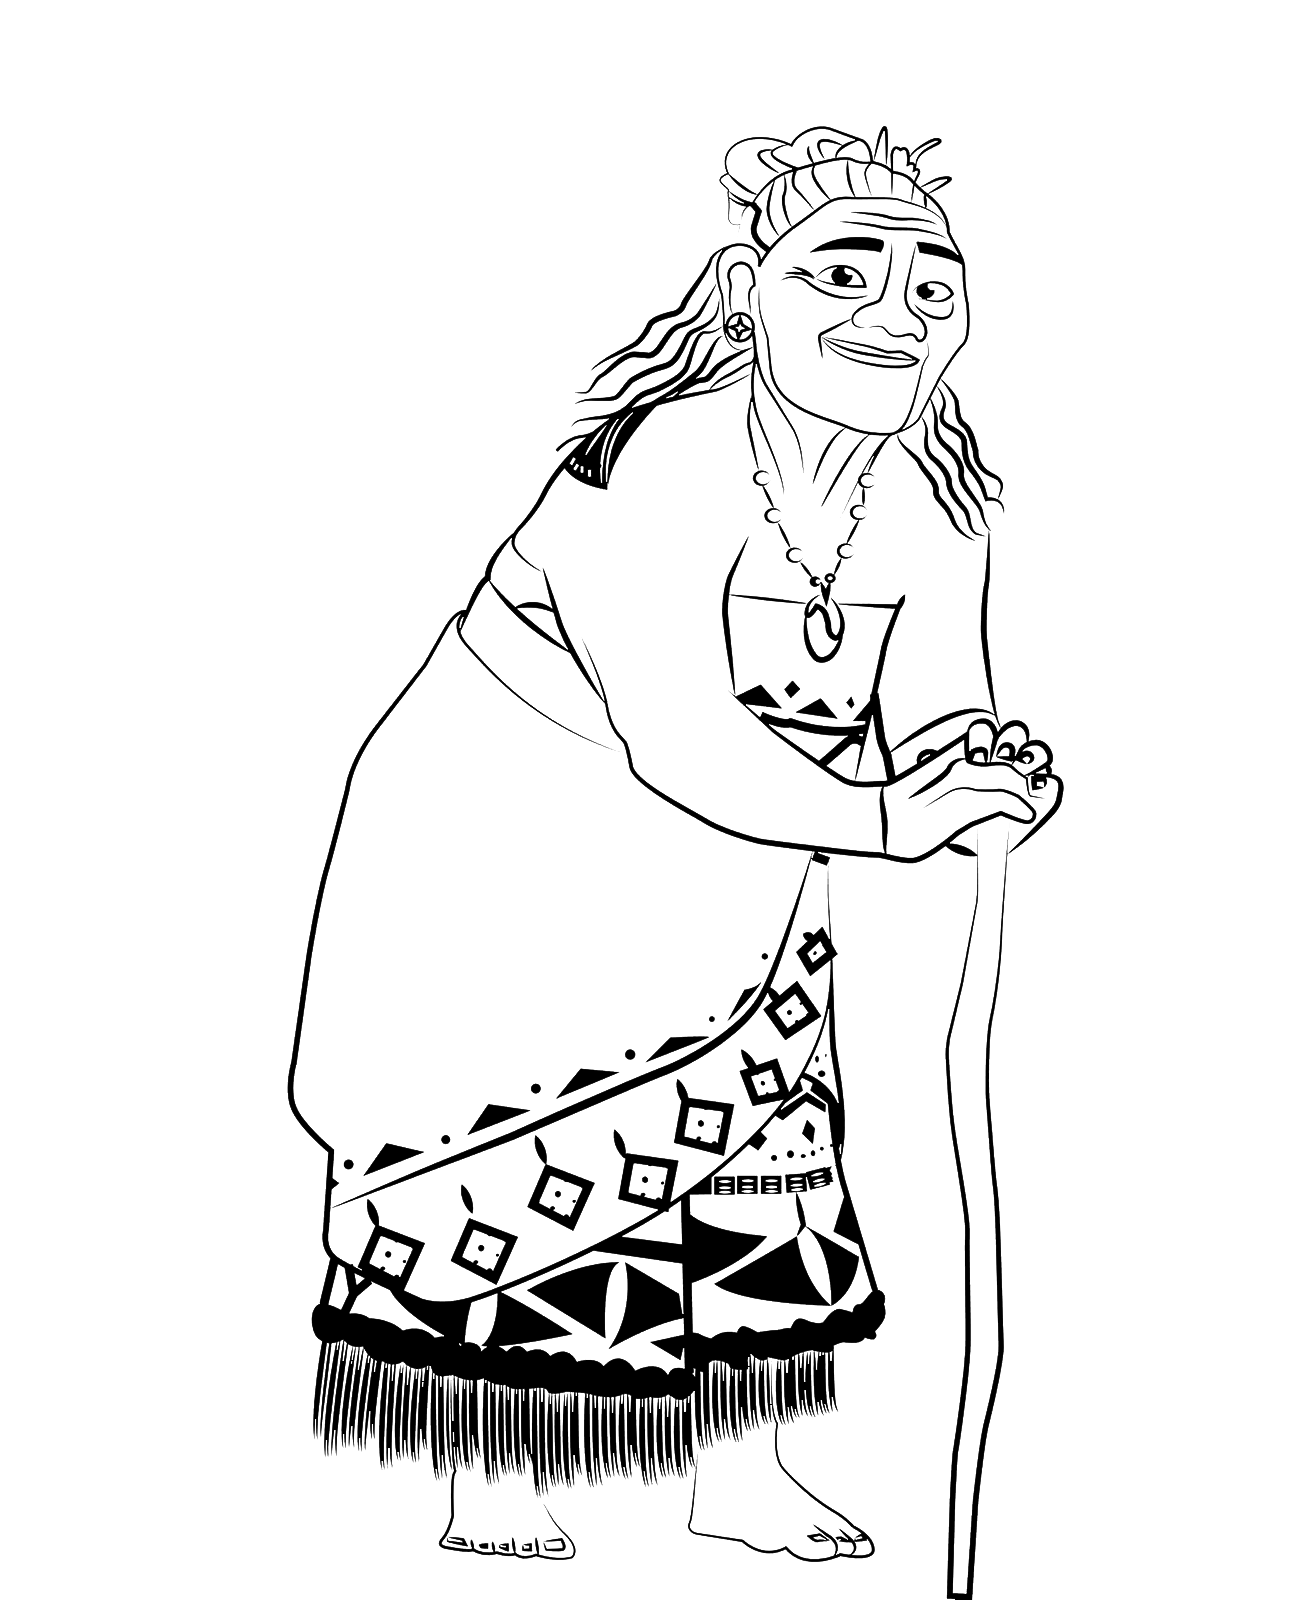 Oceania - Tala la nonna paterna della principessa Vaiana